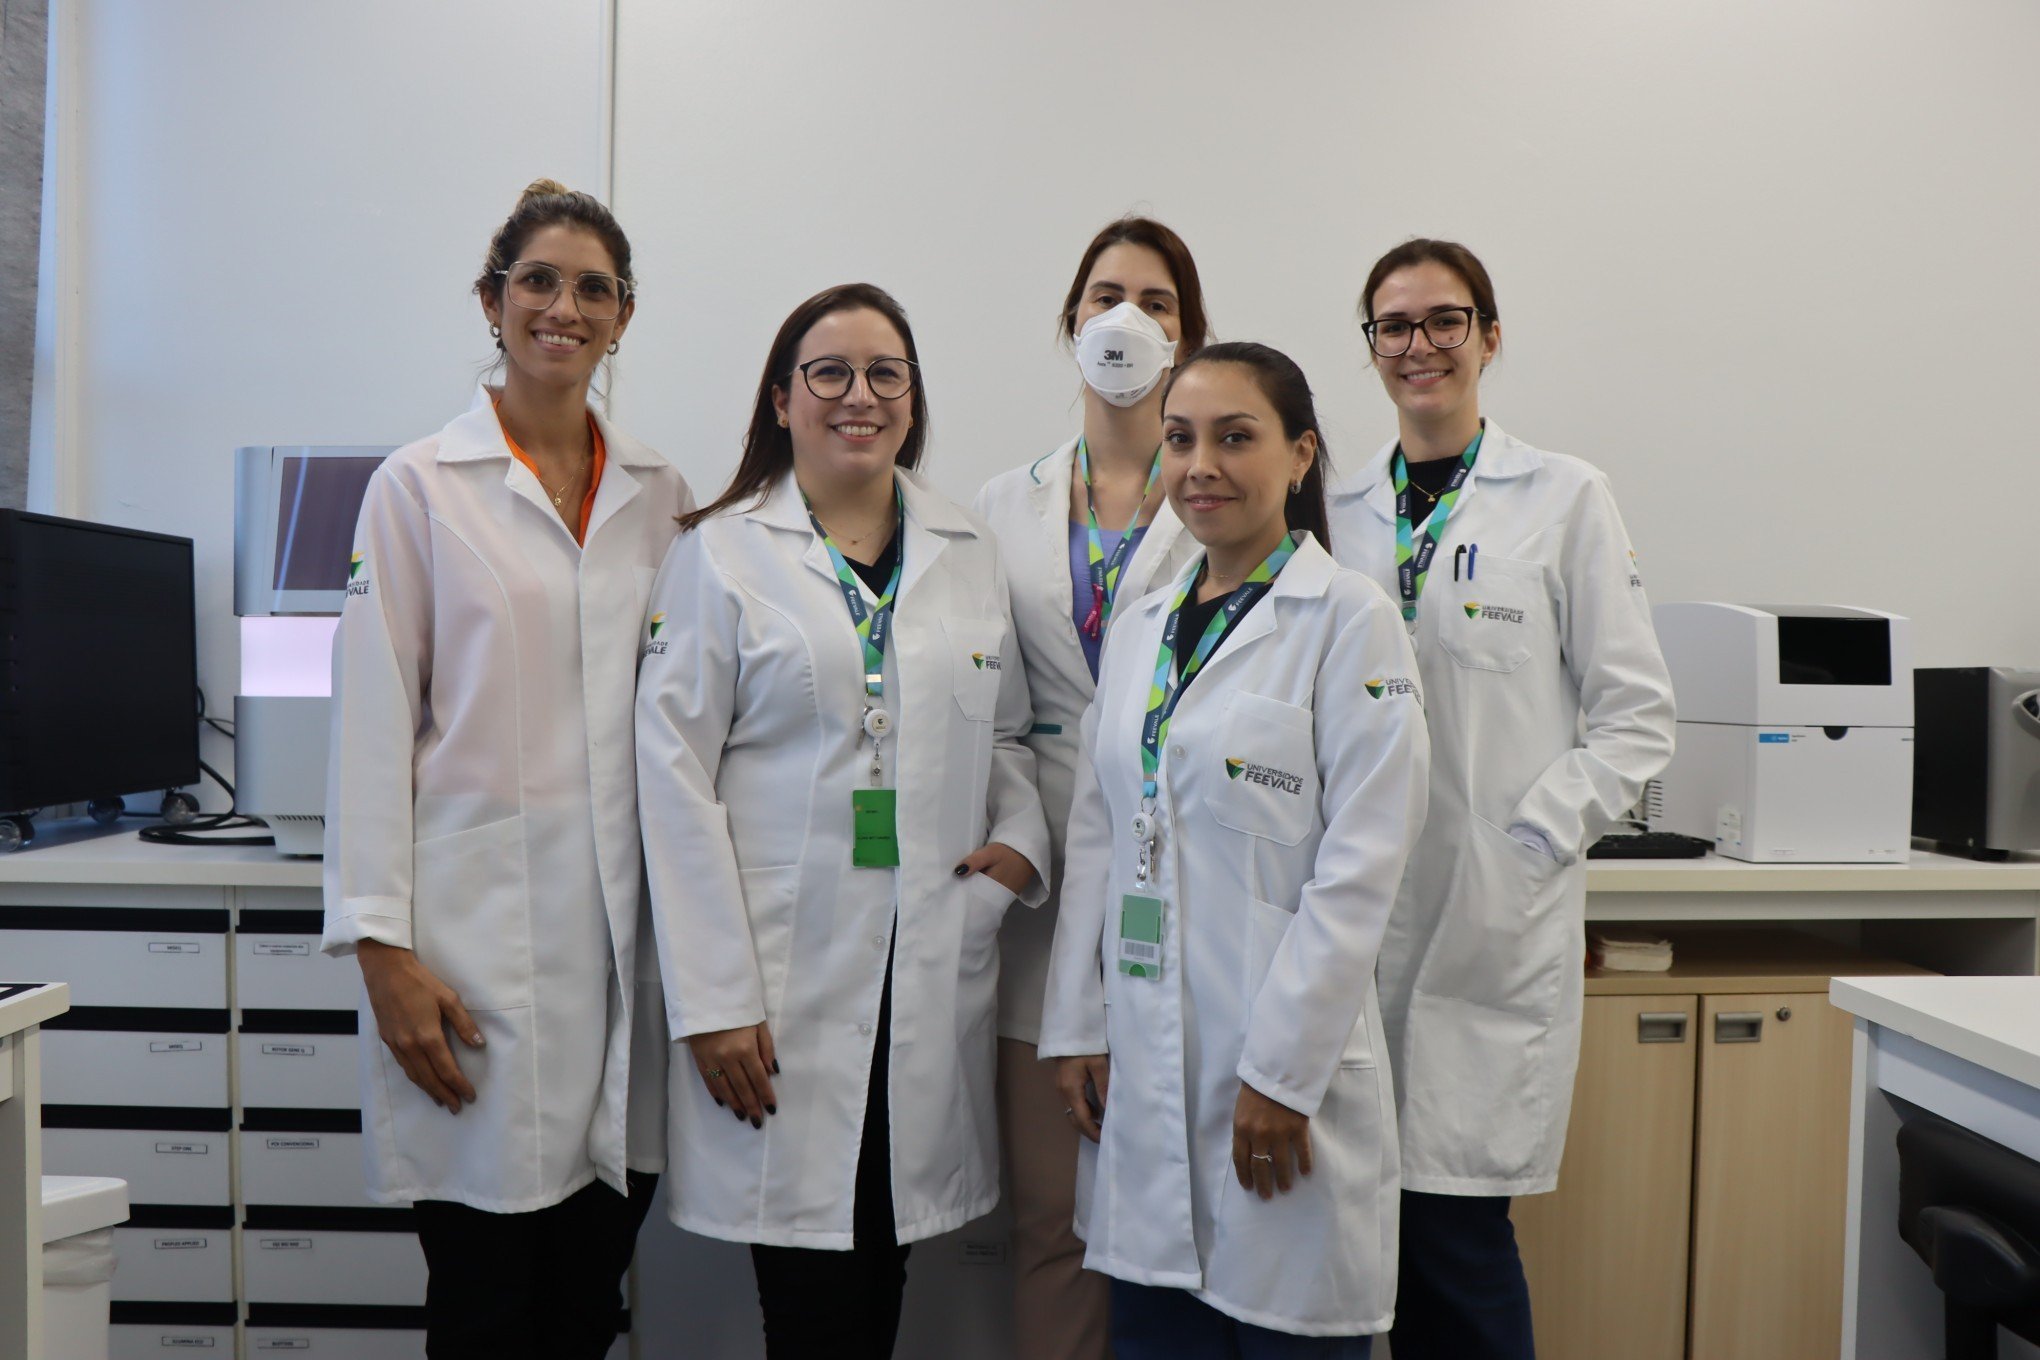 DIA INTERNACIONAL DA MULHER: Mulheres dominam áreas da ciência em universidades do Rio Grande do Sul